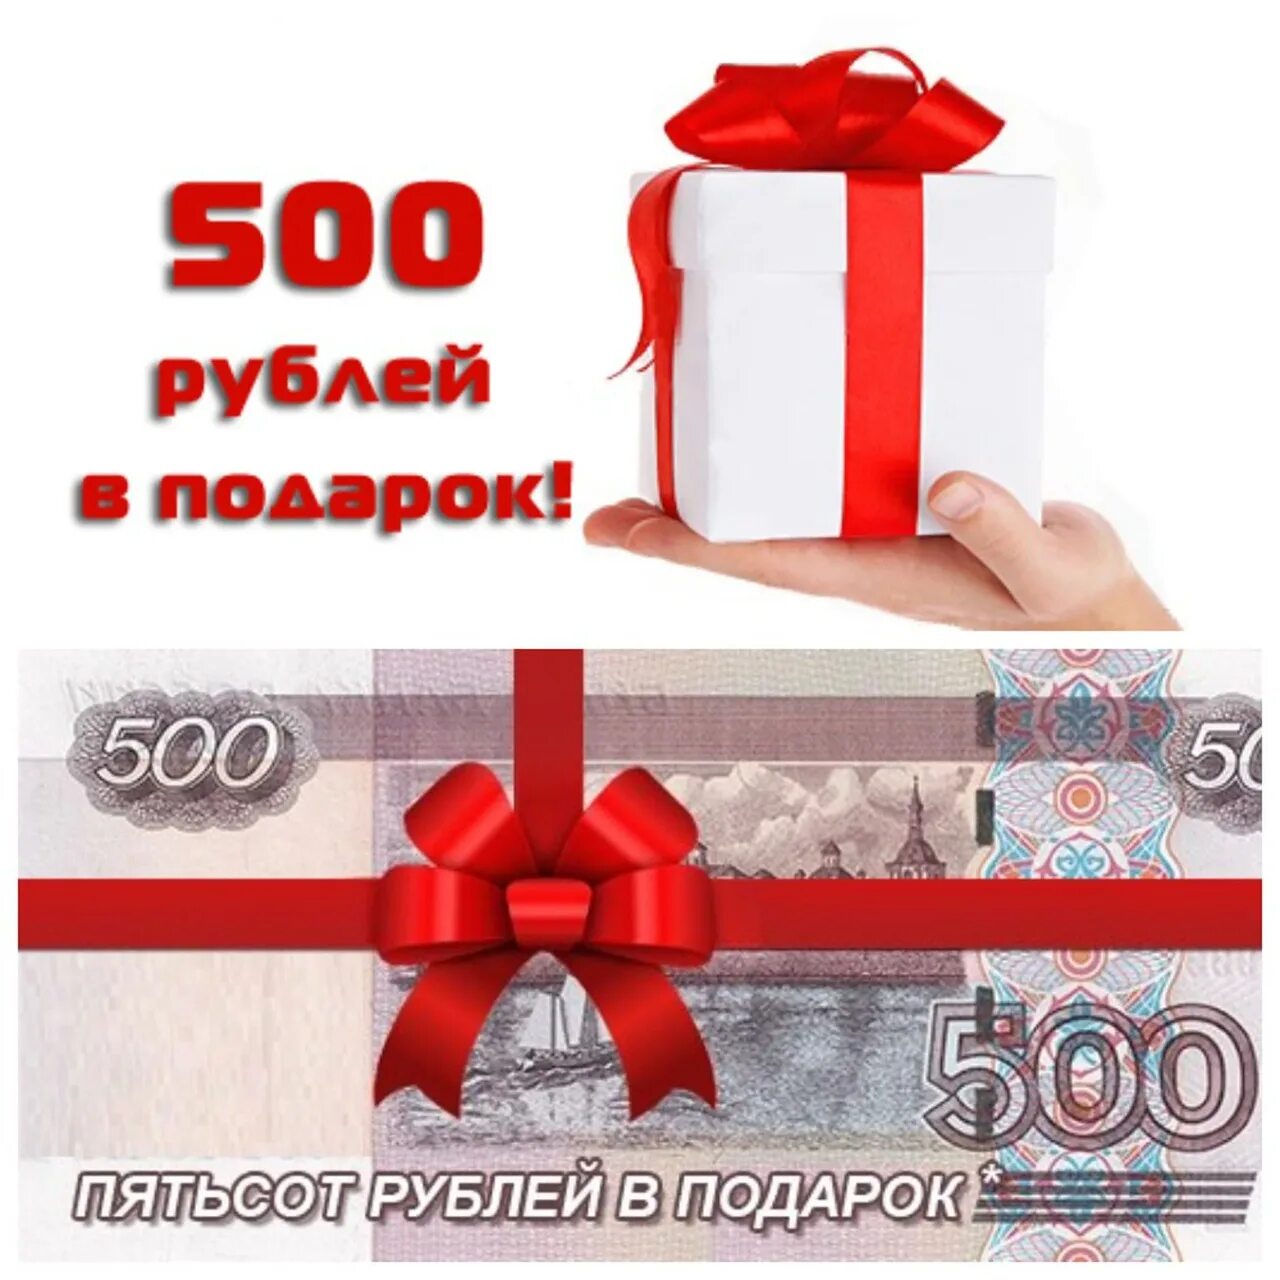 500 рублей за отзыв. Подарок на 500 рублей. Дарим 500 рублей. 500 Рублей на карте. 500 Руб в подарок.